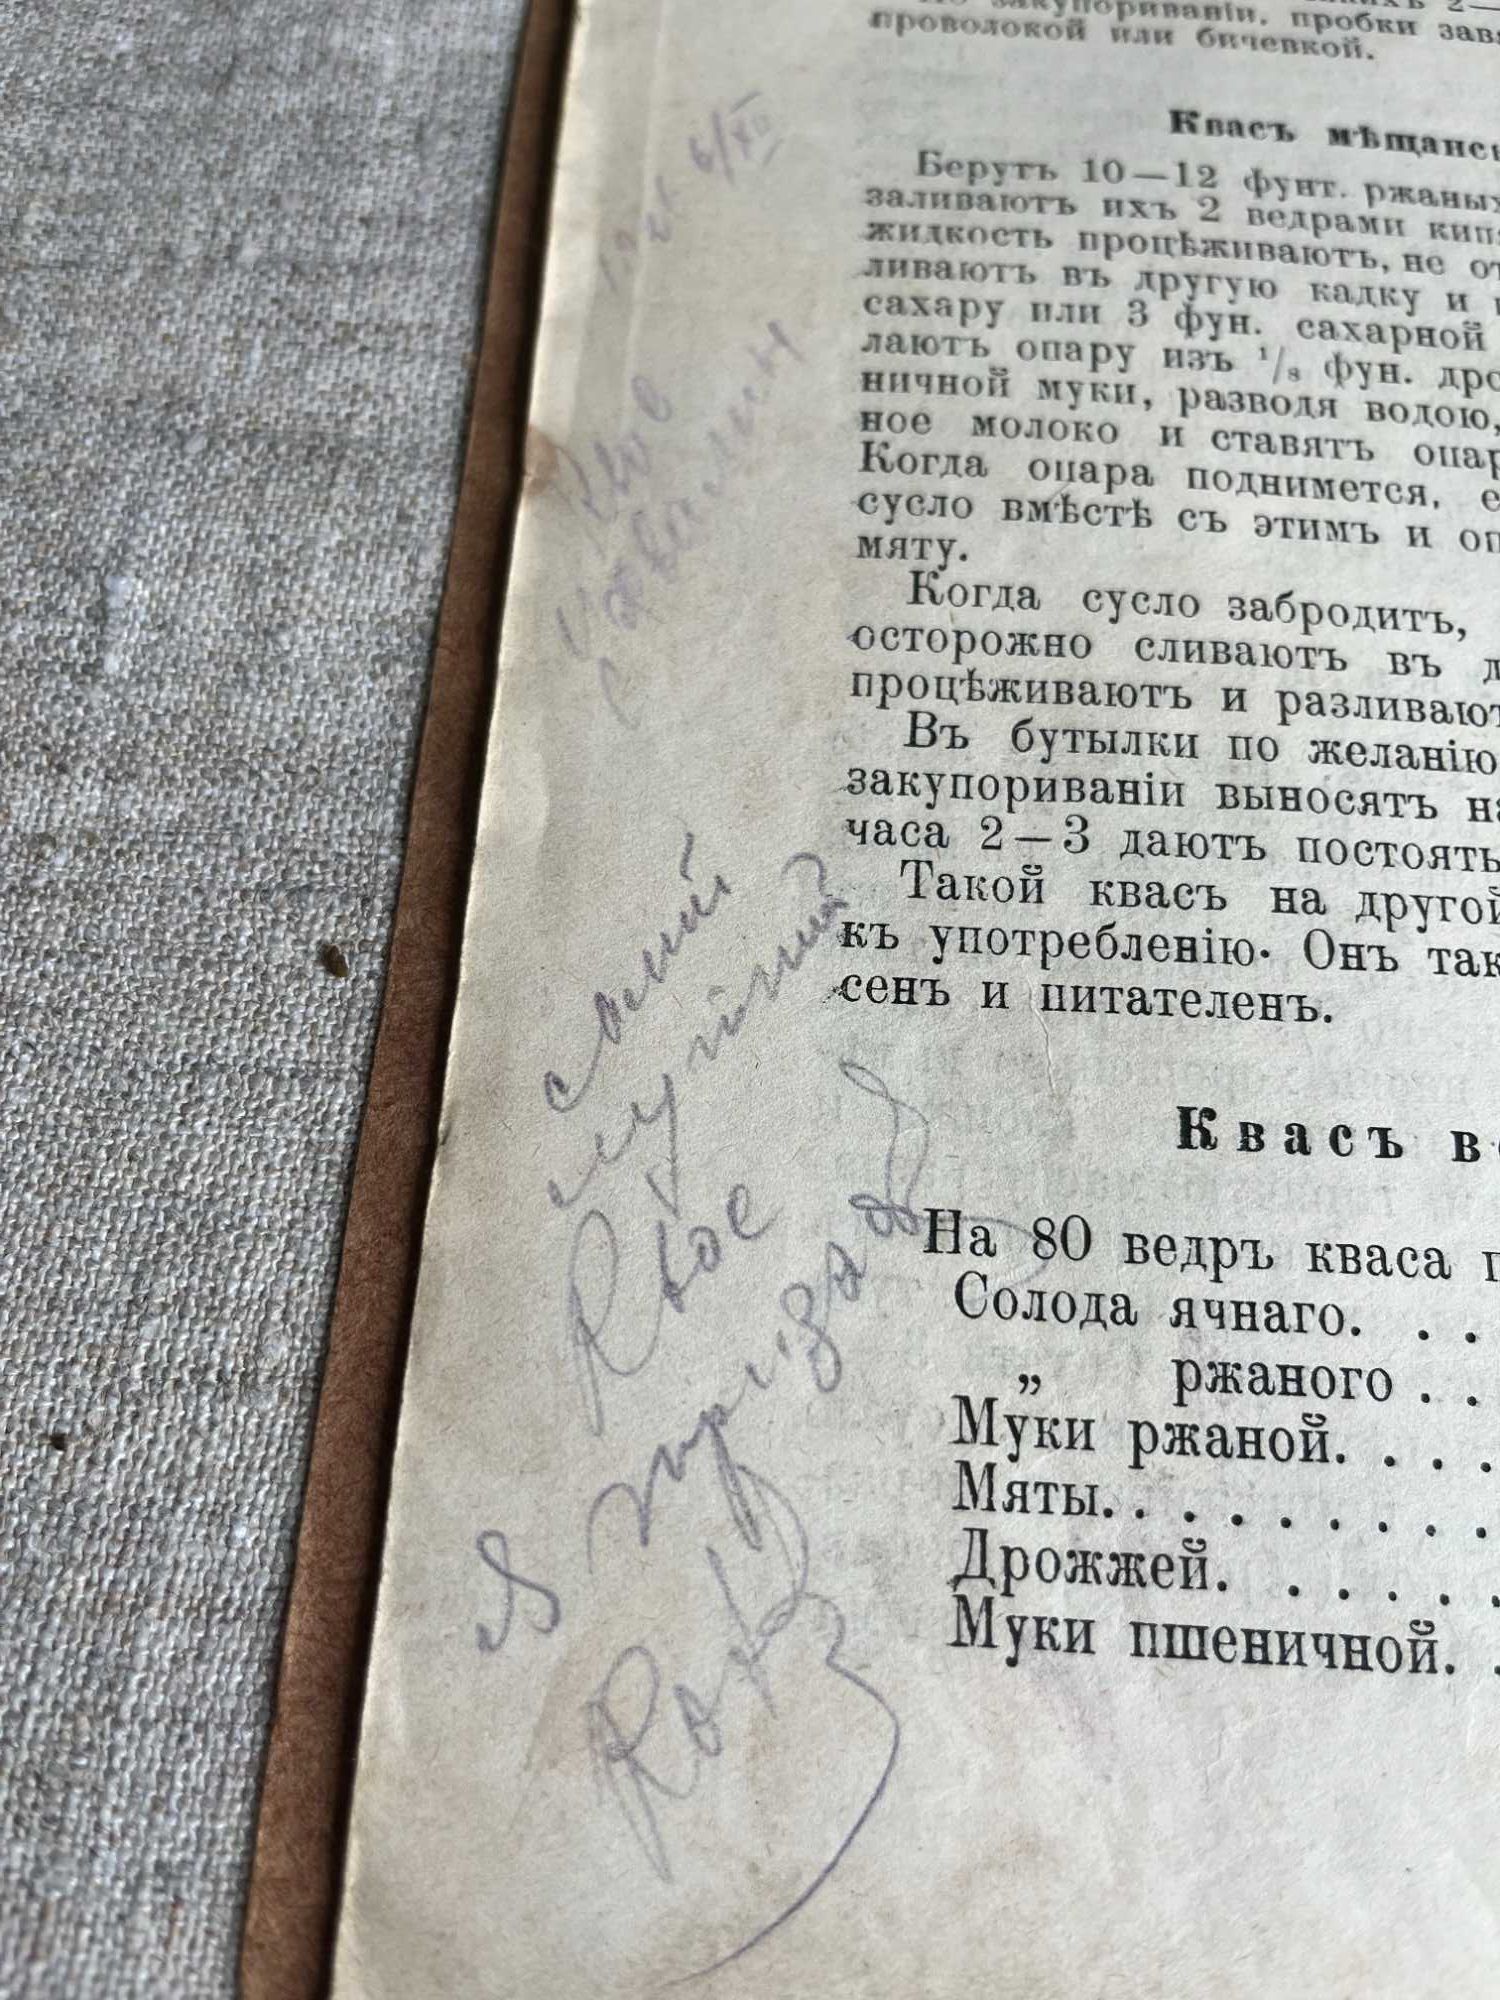 Домашній квасовар практик Ф. Васильев 1915